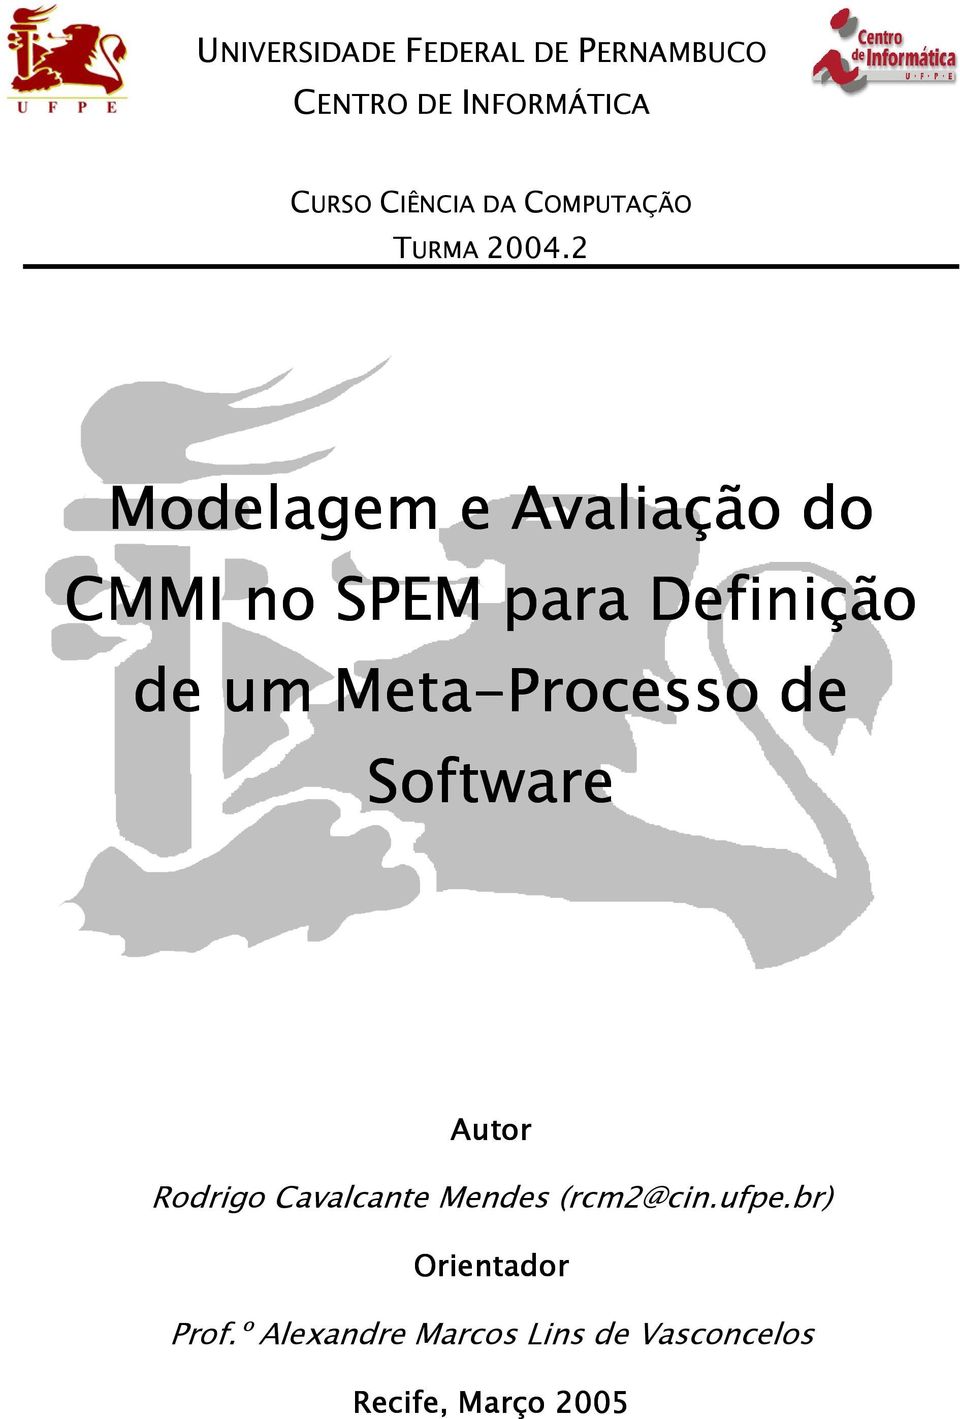 2 Modelagem e Avaliação do CMMI no SPEM para Definição de um Meta-Processo